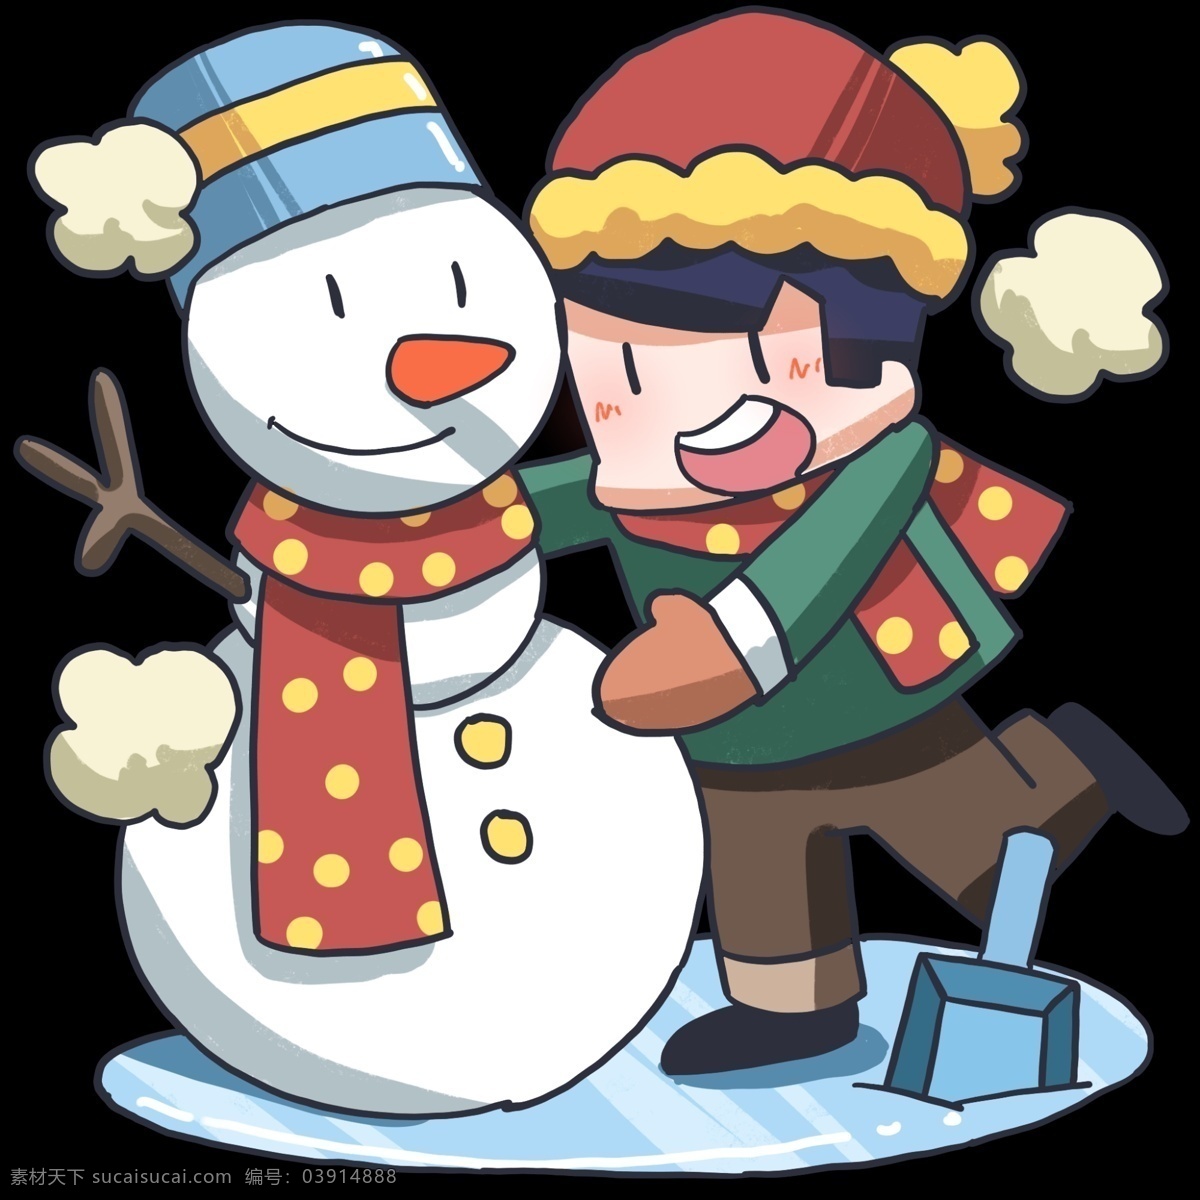 大寒 人物 雪人 插画 白色的雪人 蓝色的帽子 卡通人物插画 红色的帽子 大寒人物插画 红色的围巾